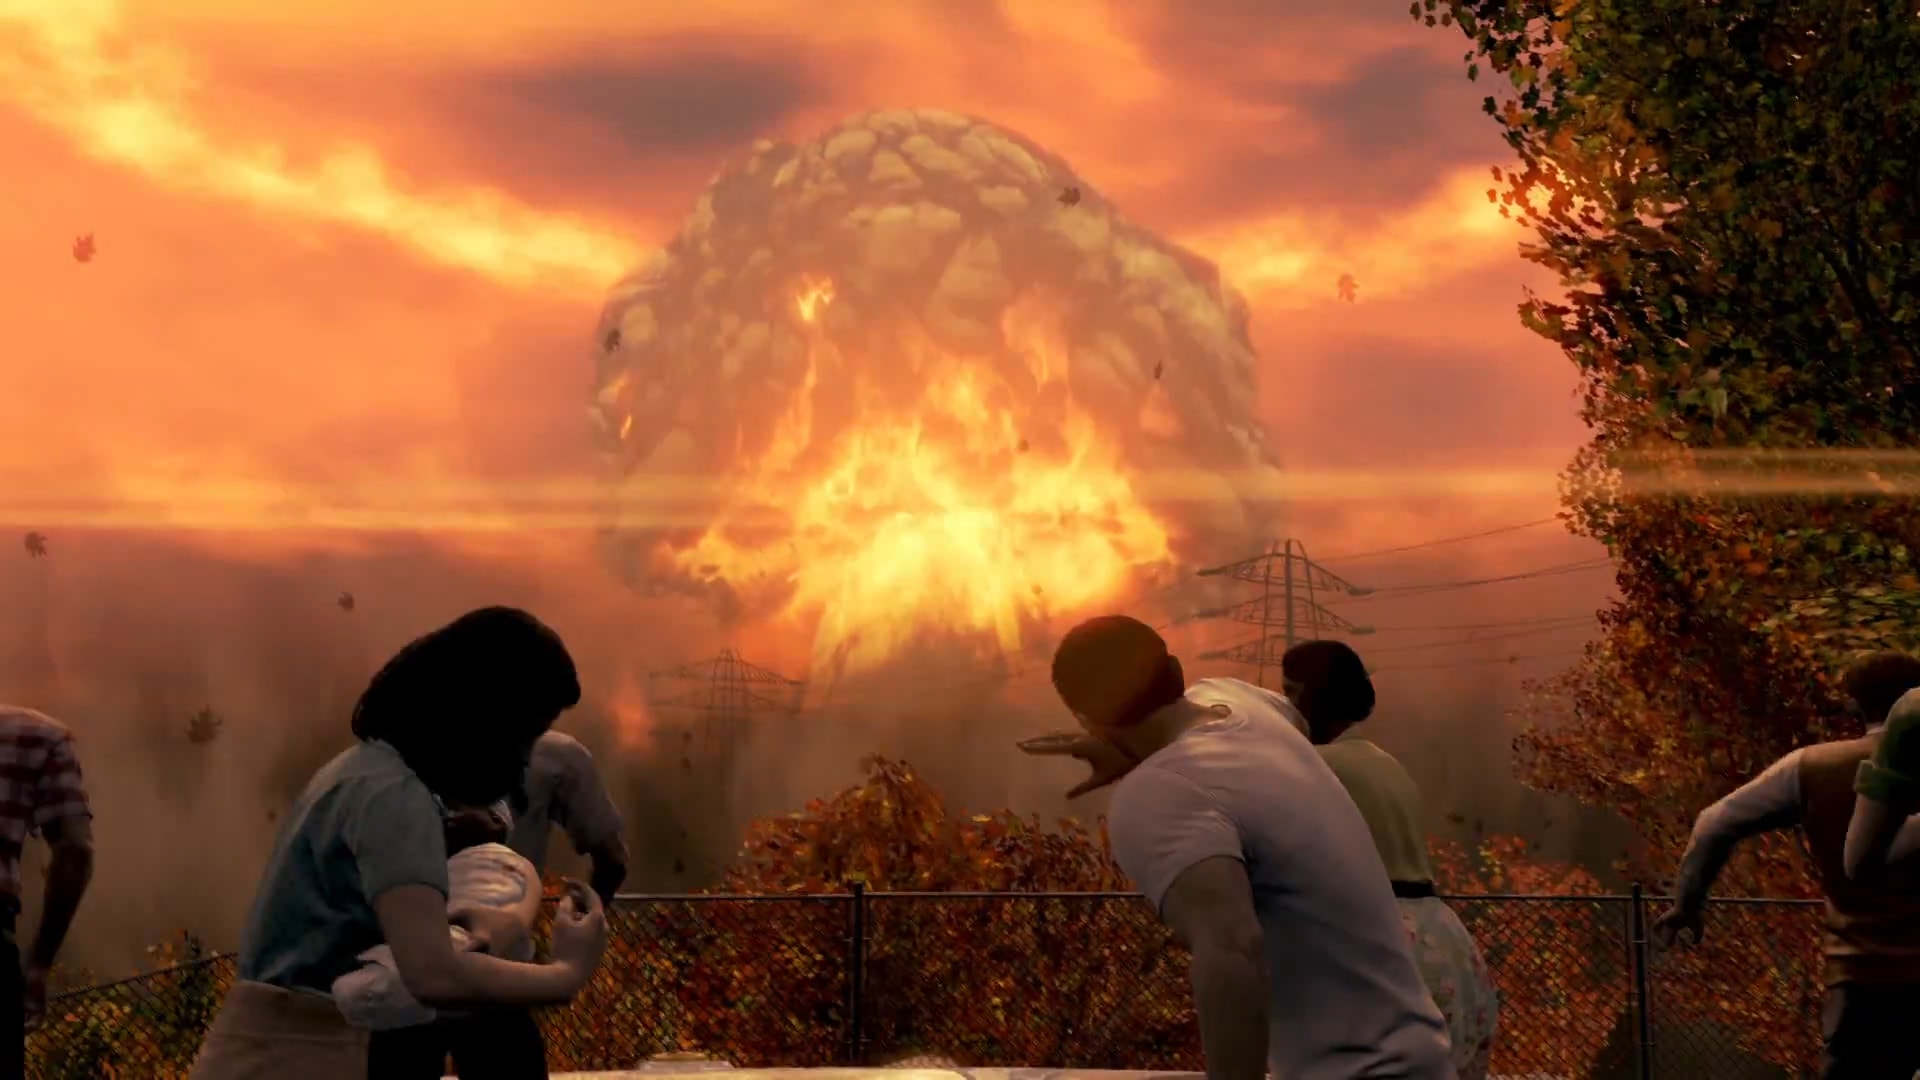 О чем были Fallout и Fallout 2: краткое содержание сюжета